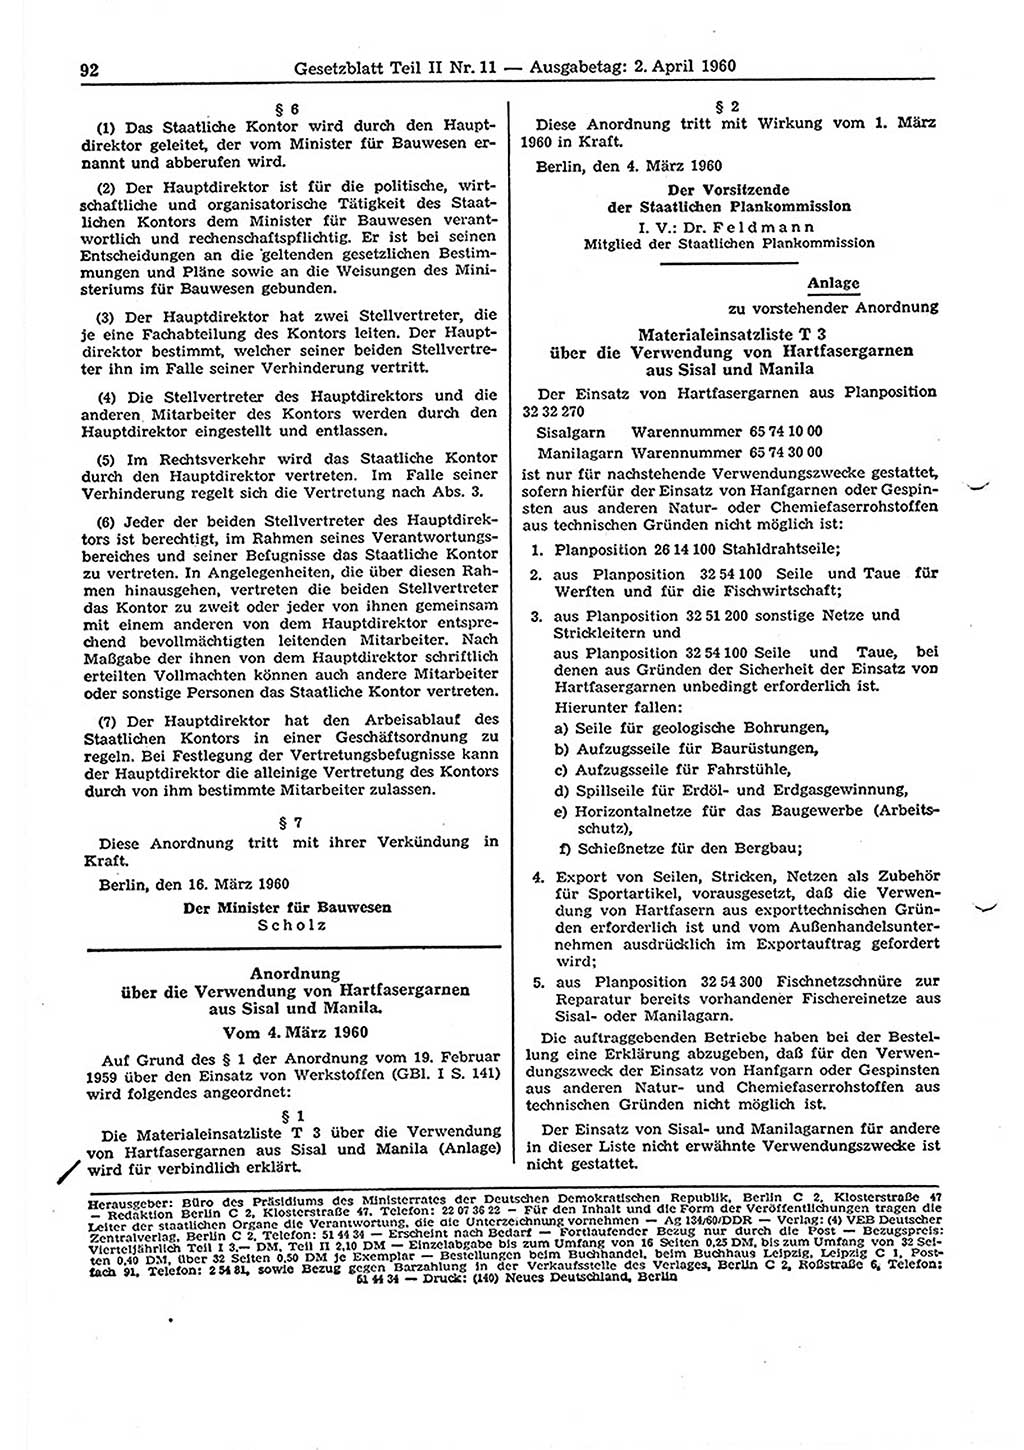 Gesetzblatt (GBl.) der Deutschen Demokratischen Republik (DDR) Teil ⅠⅠ 1960, Seite 92 (GBl. DDR ⅠⅠ 1960, S. 92)